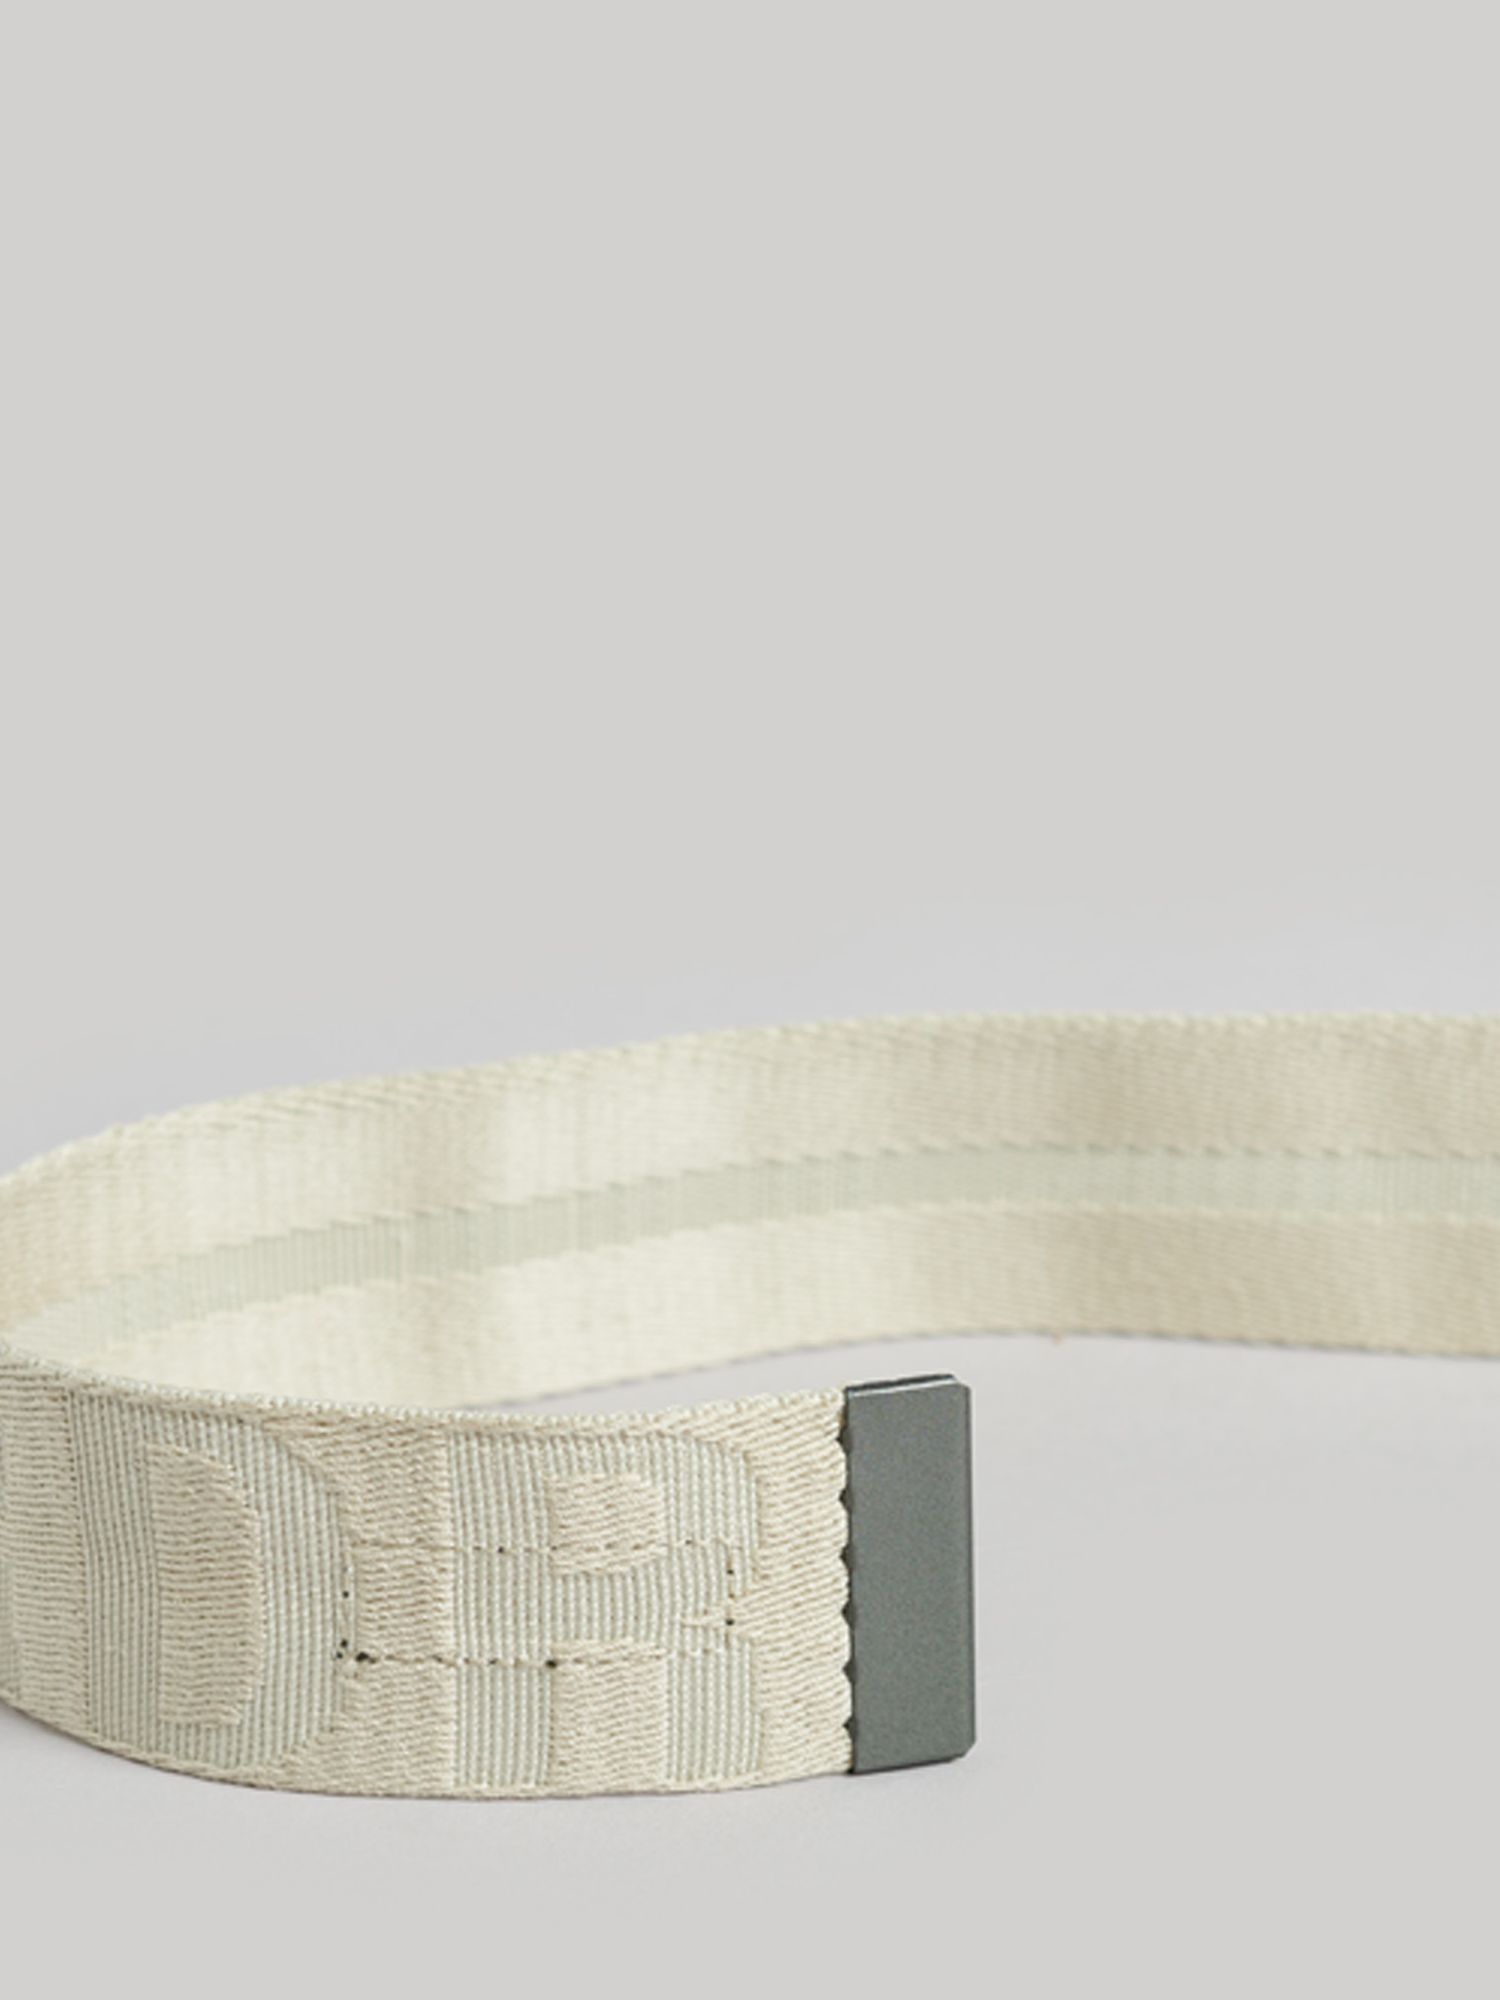 Superdry Webbing Belt, Pelican Beige, One Size